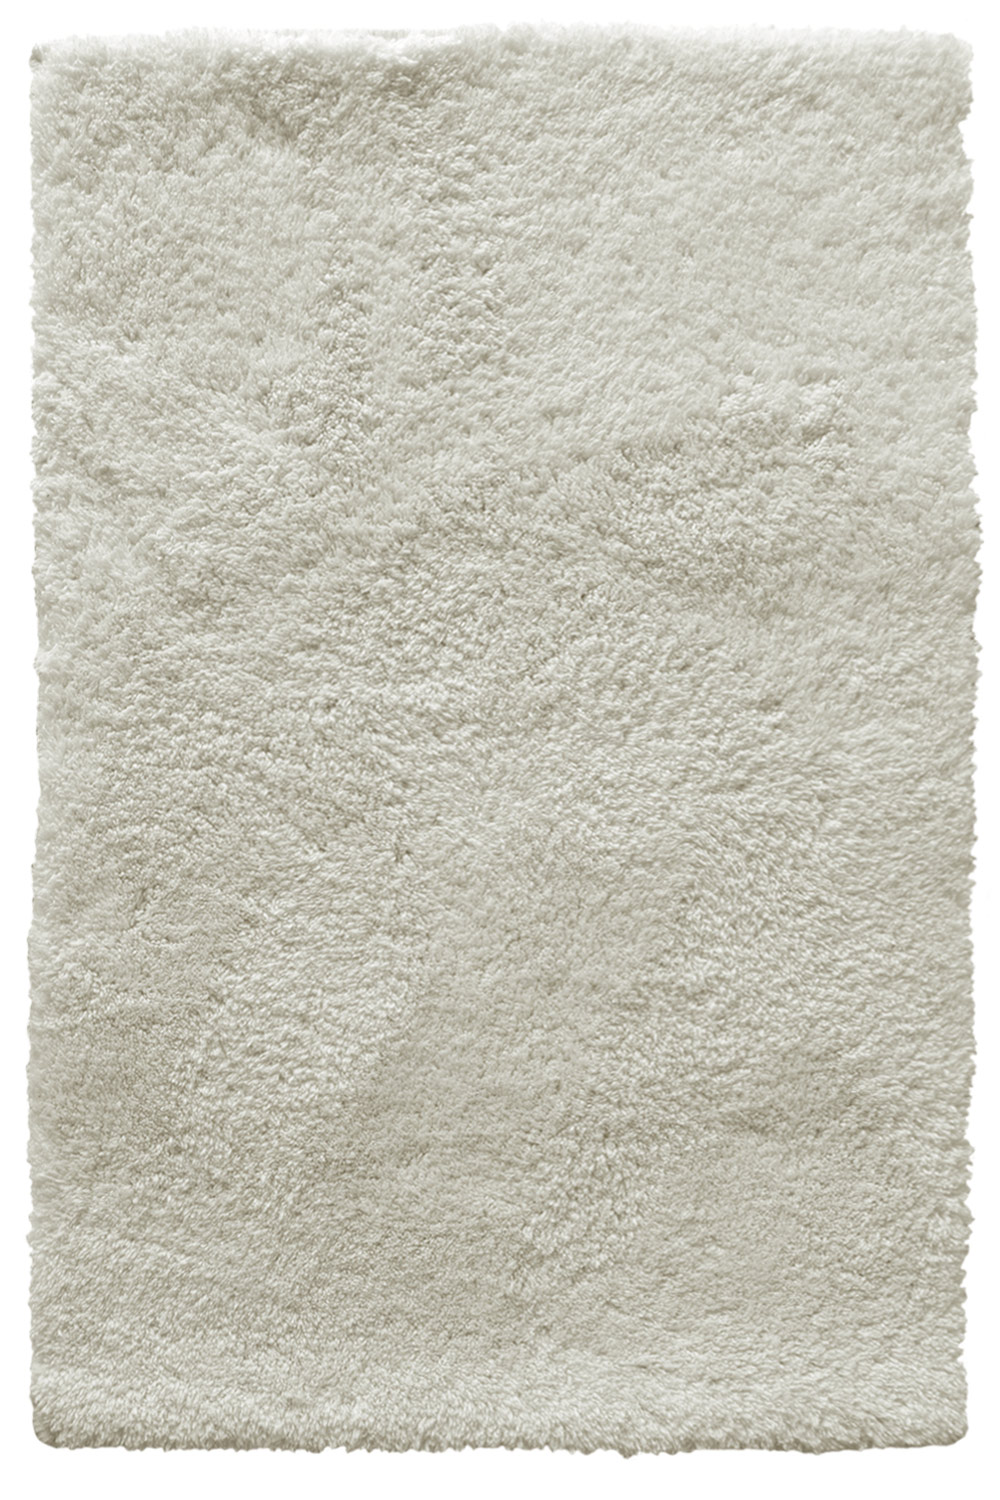 Kusový koberec SPRING ivory 120x170 cm